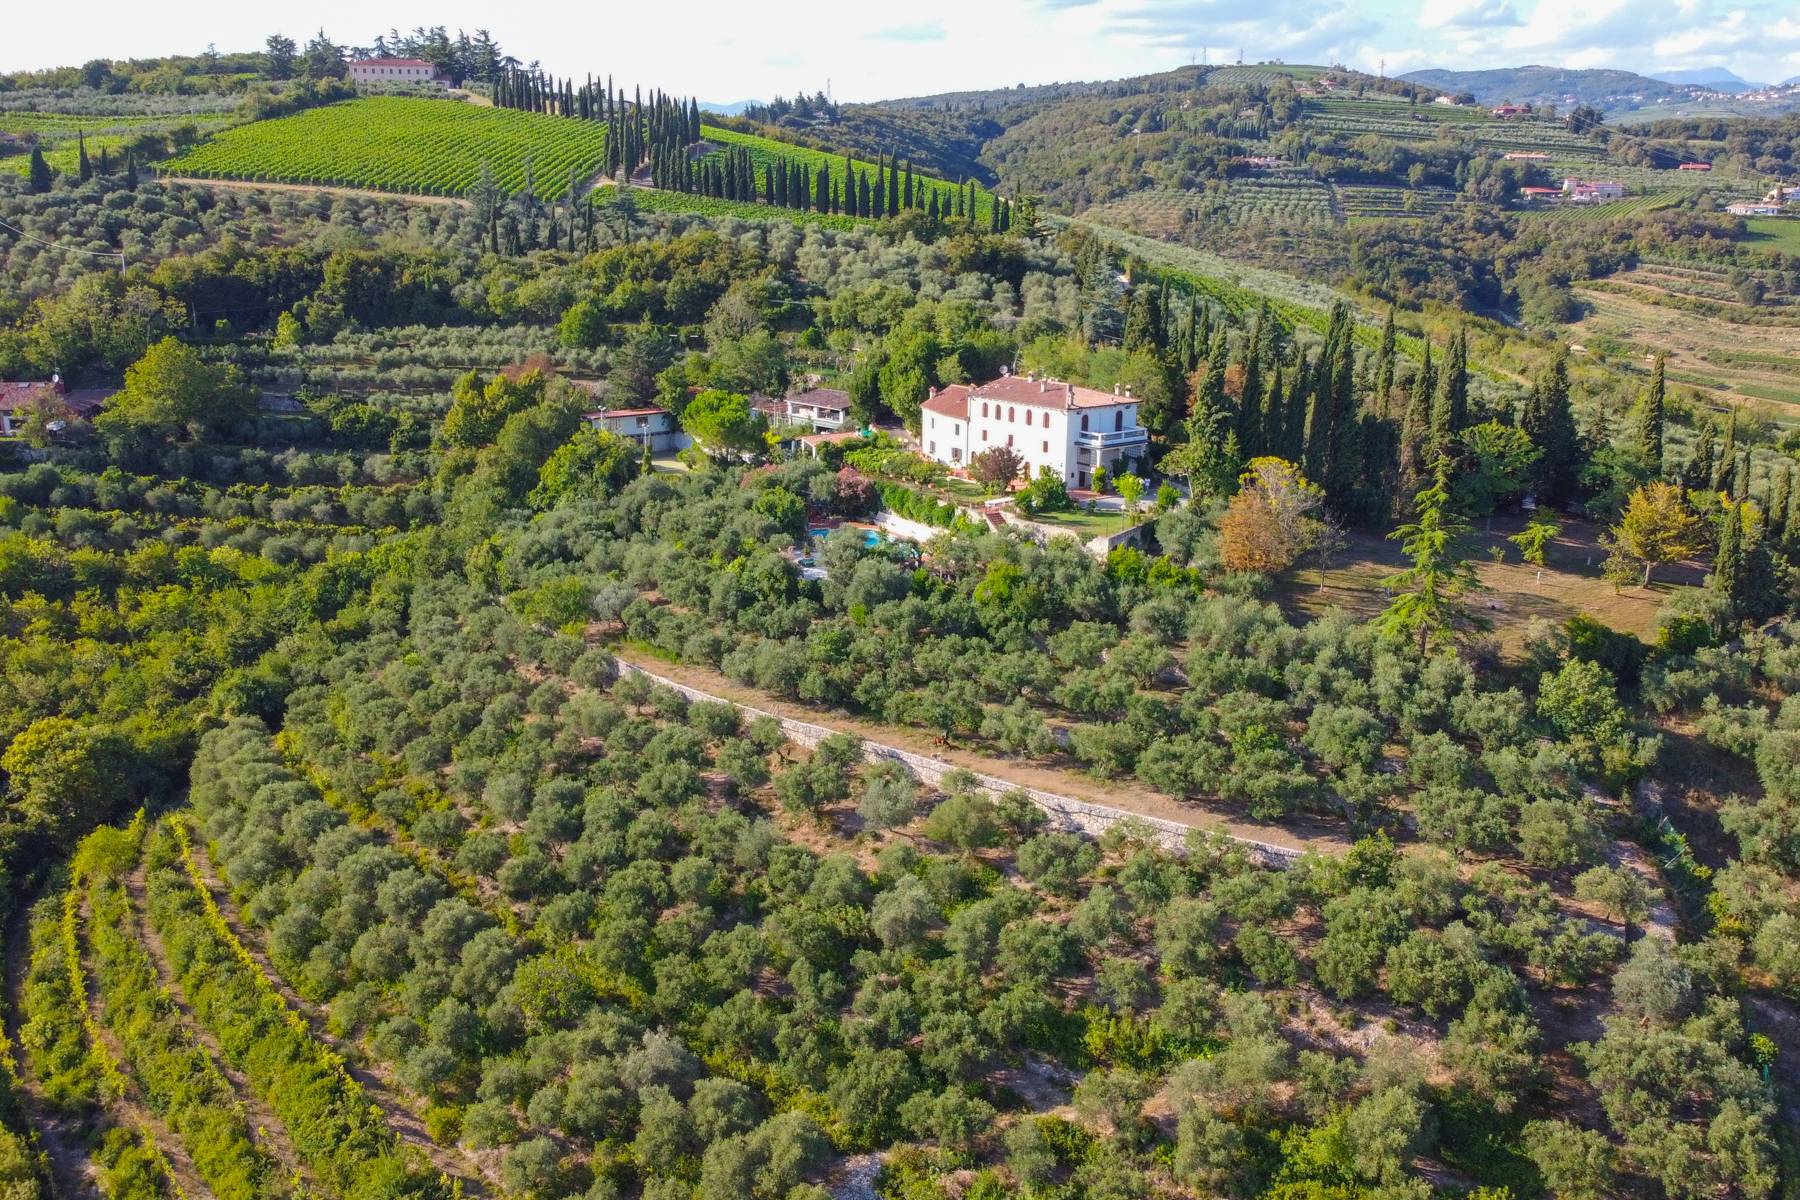 Villa in Vendita a San Martino Buon Albergo: 5 locali, 900 mq - Foto 1